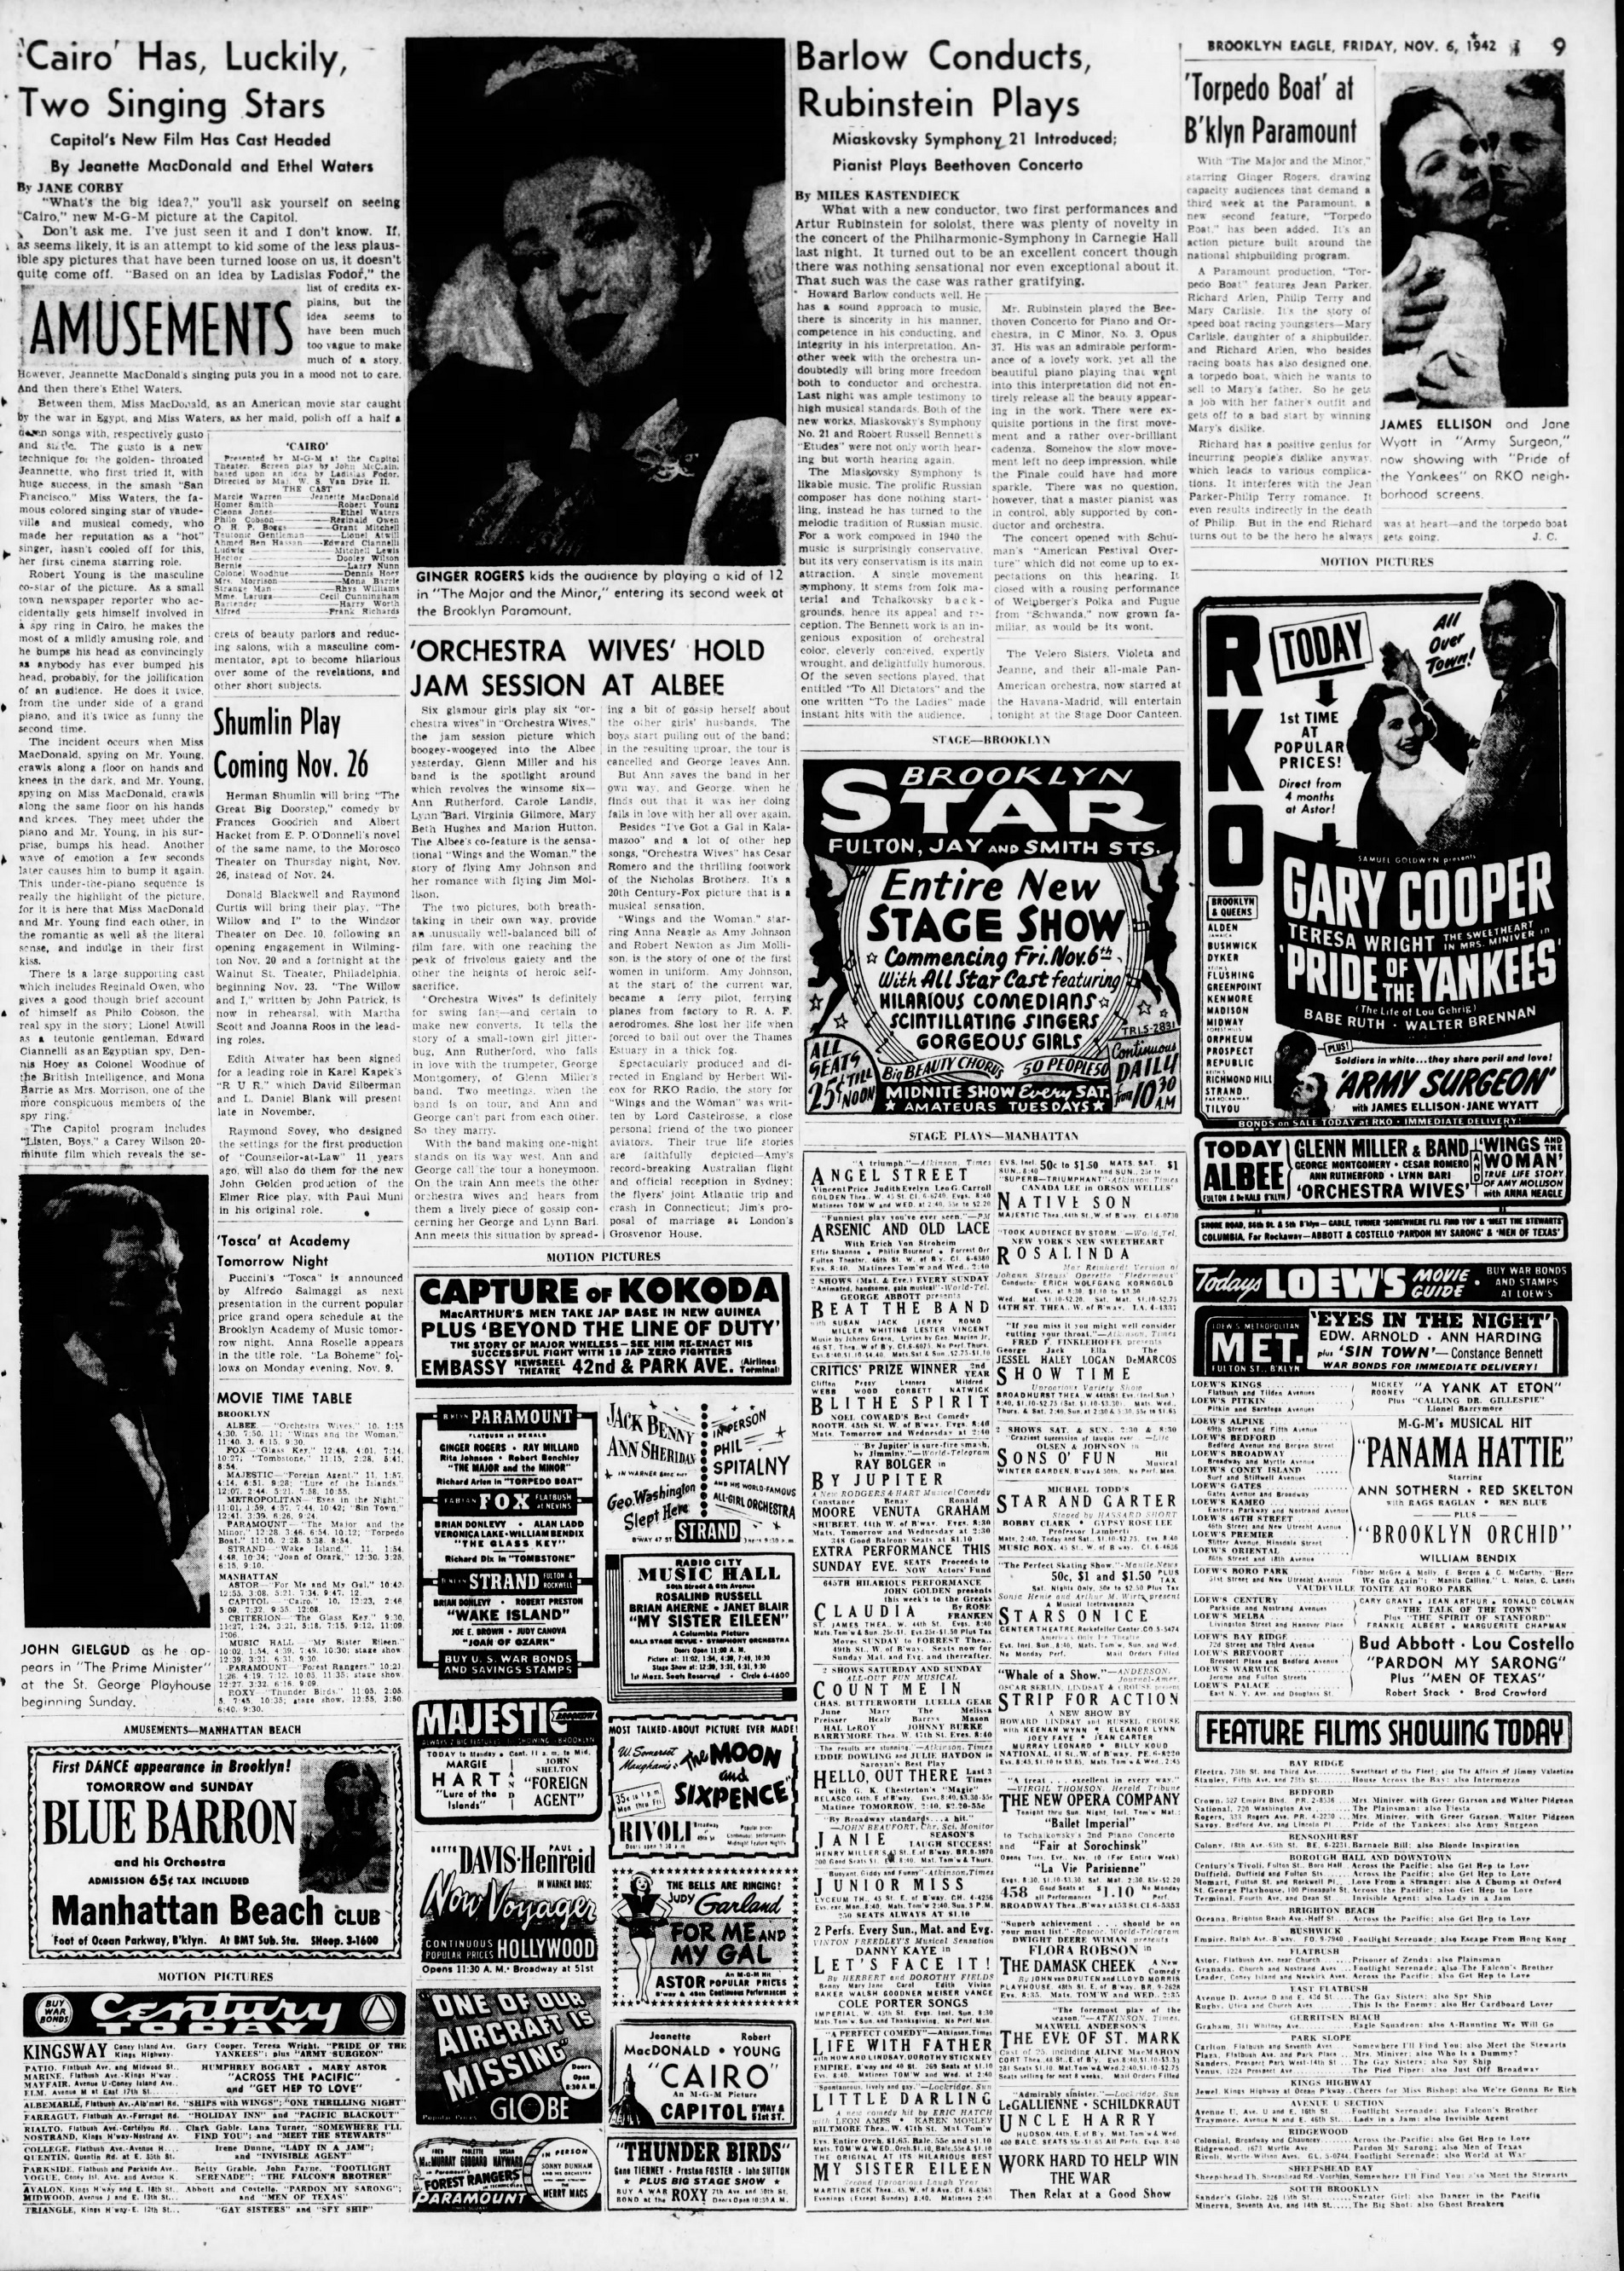 The_Brooklyn_Daily_Eagle_Fri__Nov_6__1942_(2).jpg